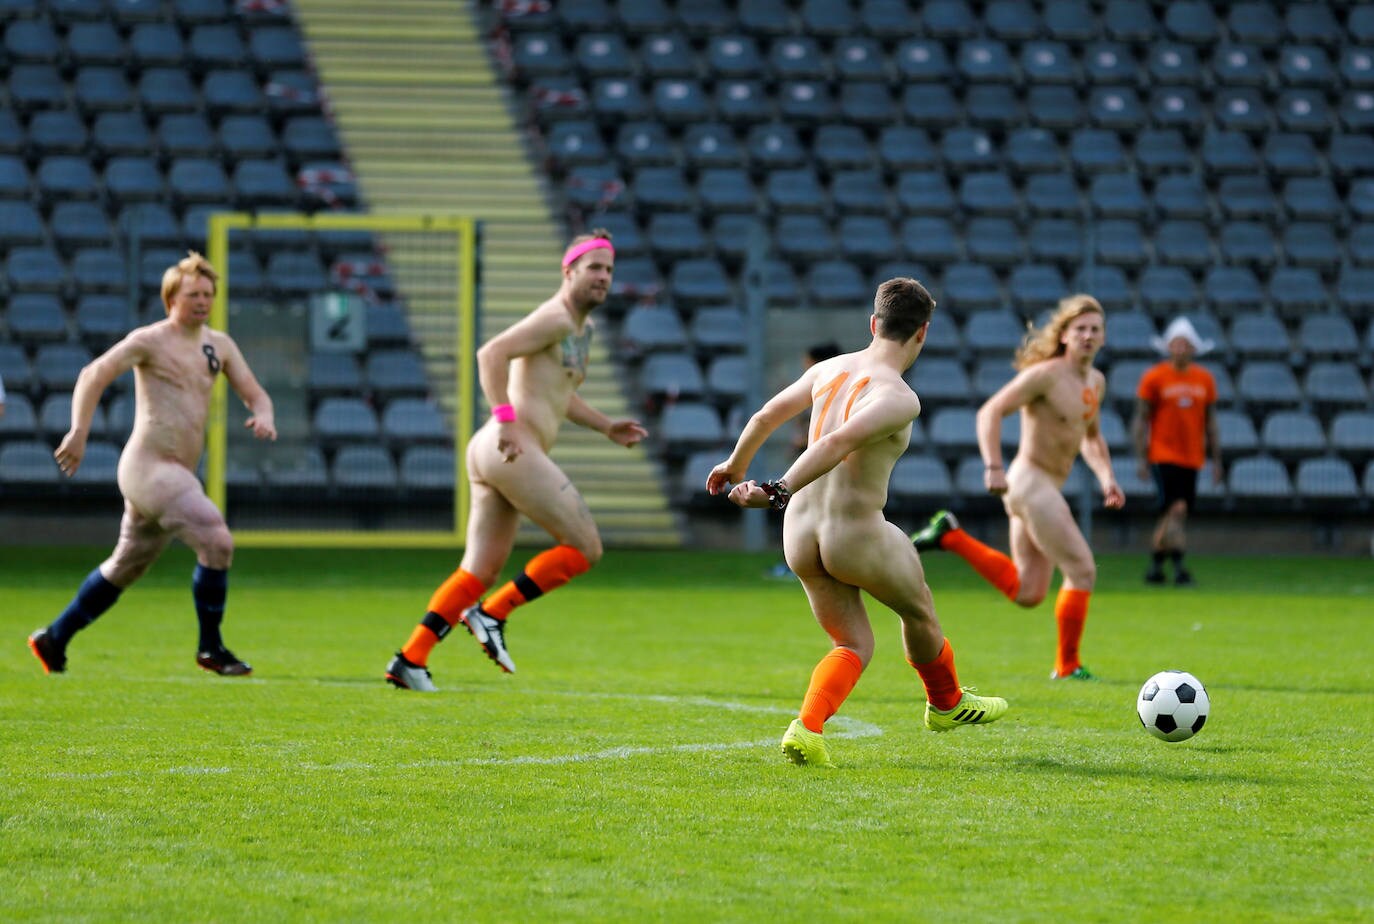 Jugadores de futbol desnudos